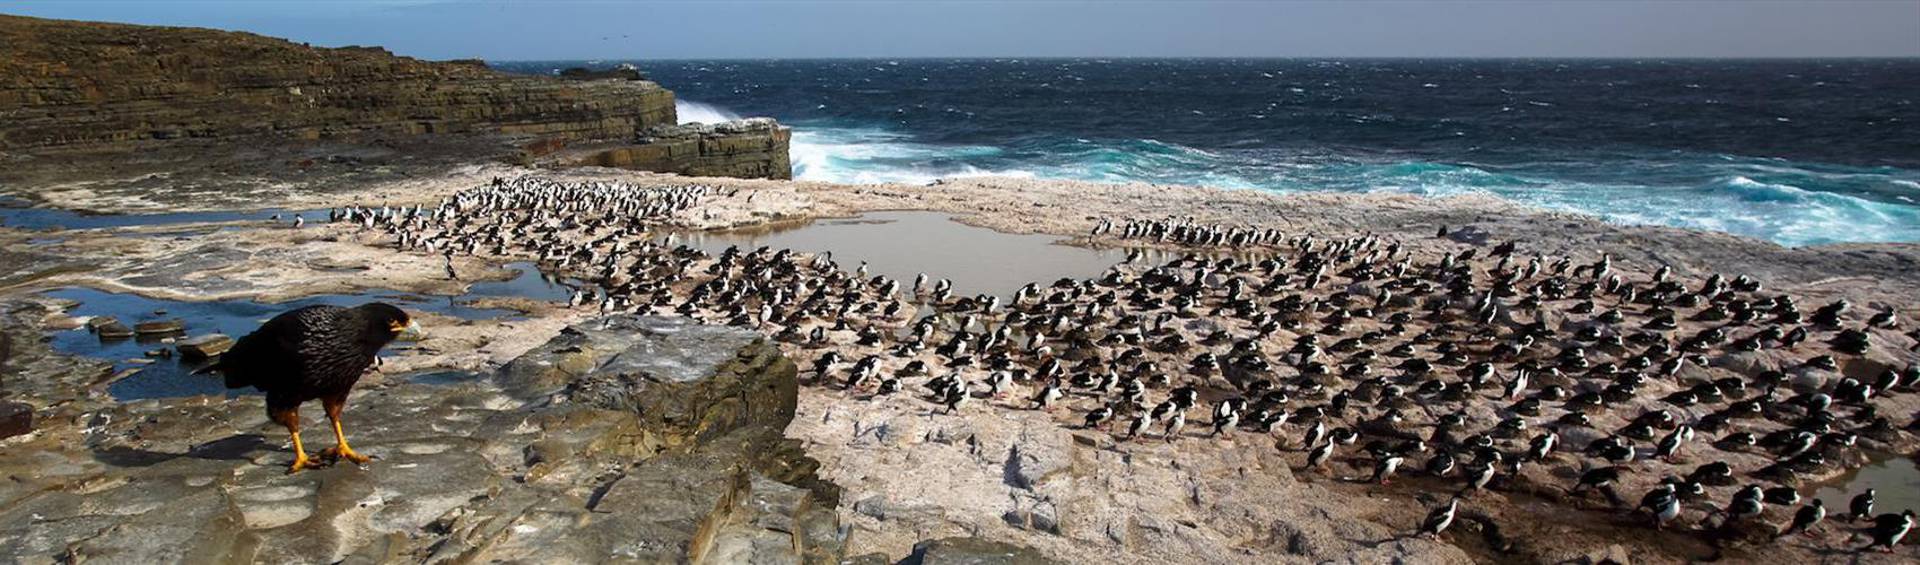 Falkland Islands, Ultimate Island Adventure!